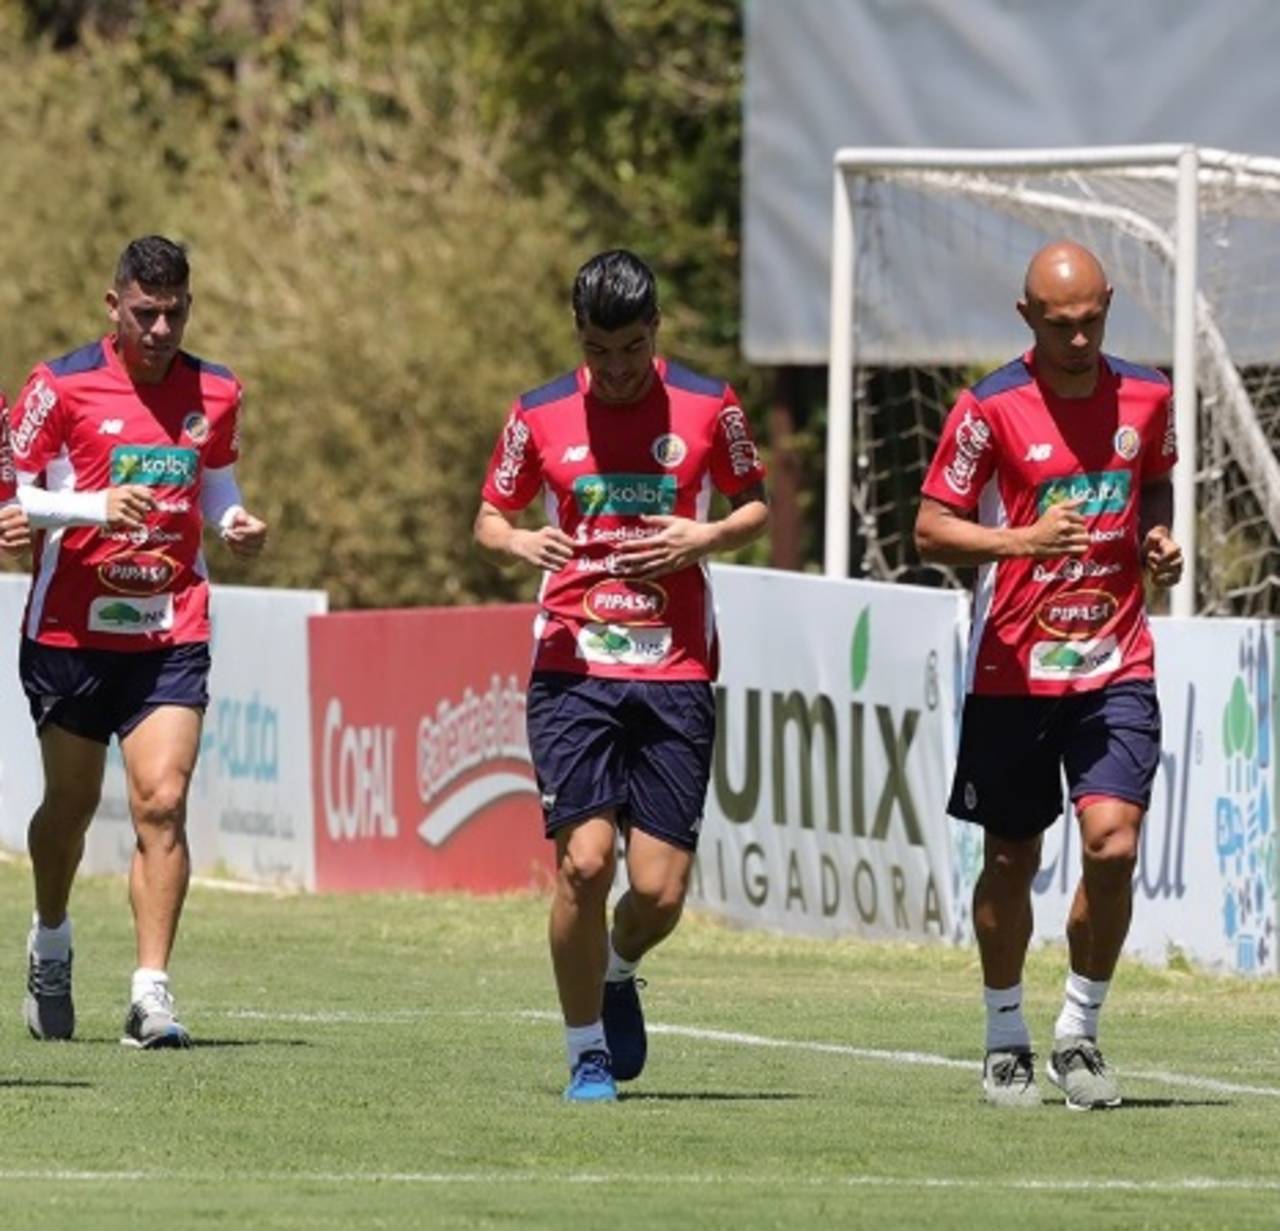 La selección de Costa Rica comenzó sus entrenamientos para enfrentar a México y Honduras en las eliminatorias mundialistas. Los costarricenses confían en derrotar el viernes a México